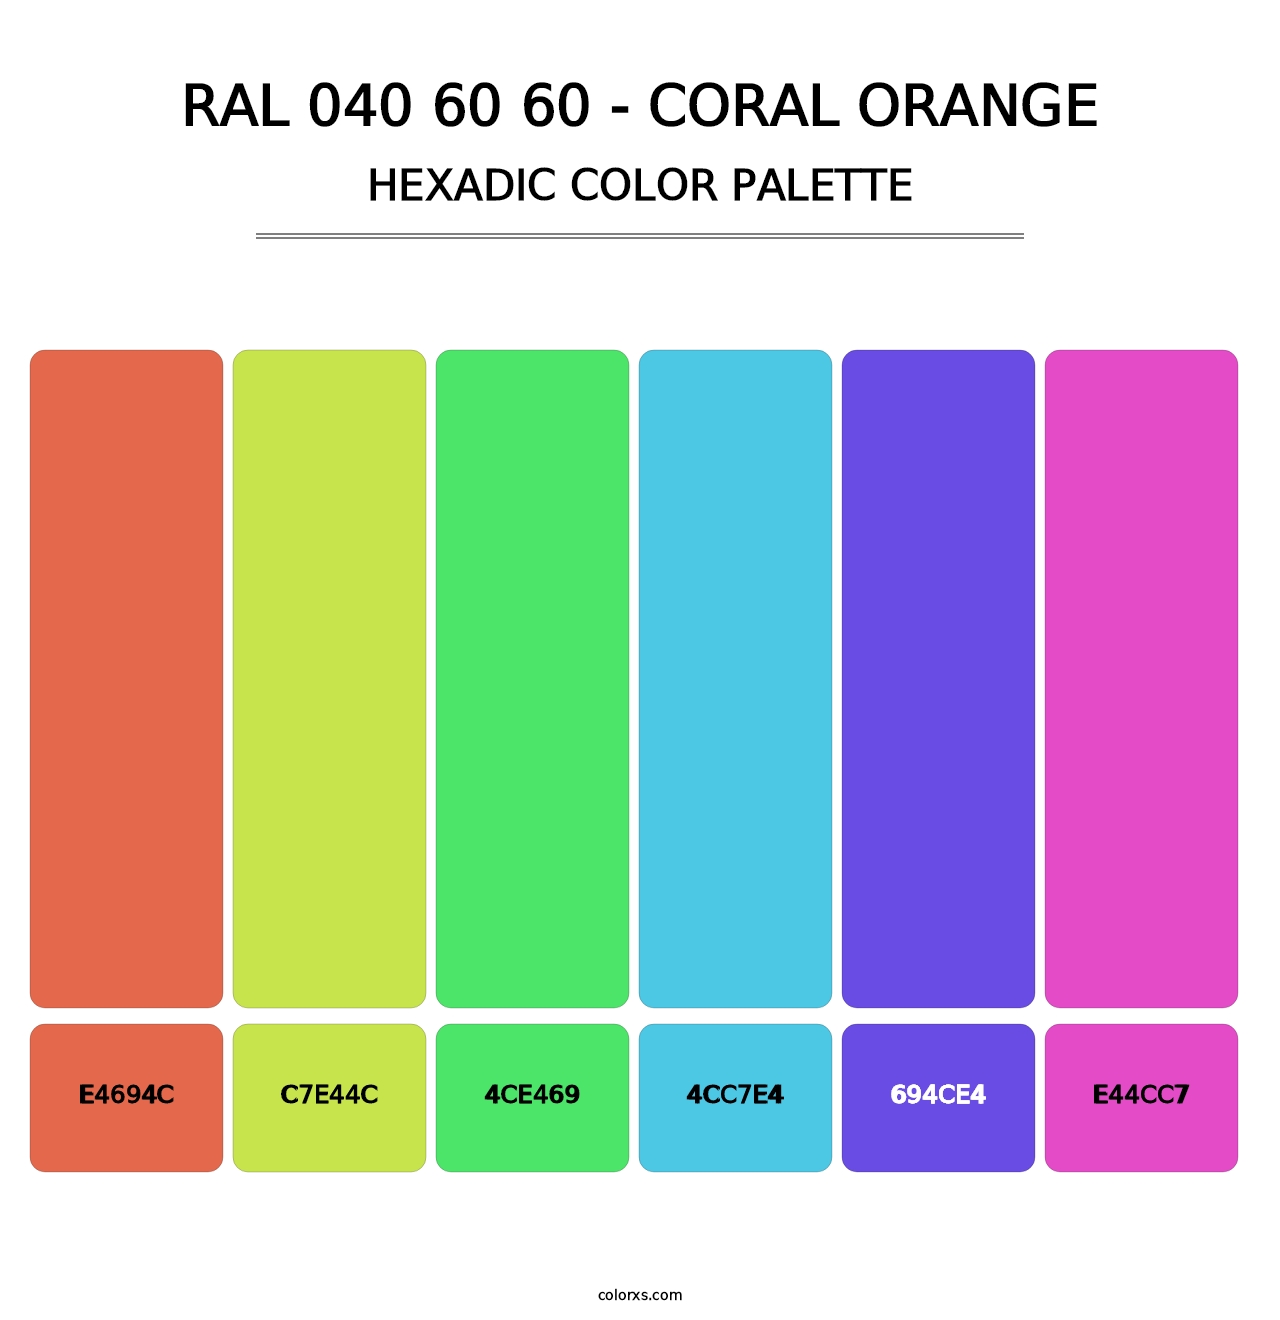 RAL 040 60 60 - Coral Orange - Hexadic Color Palette